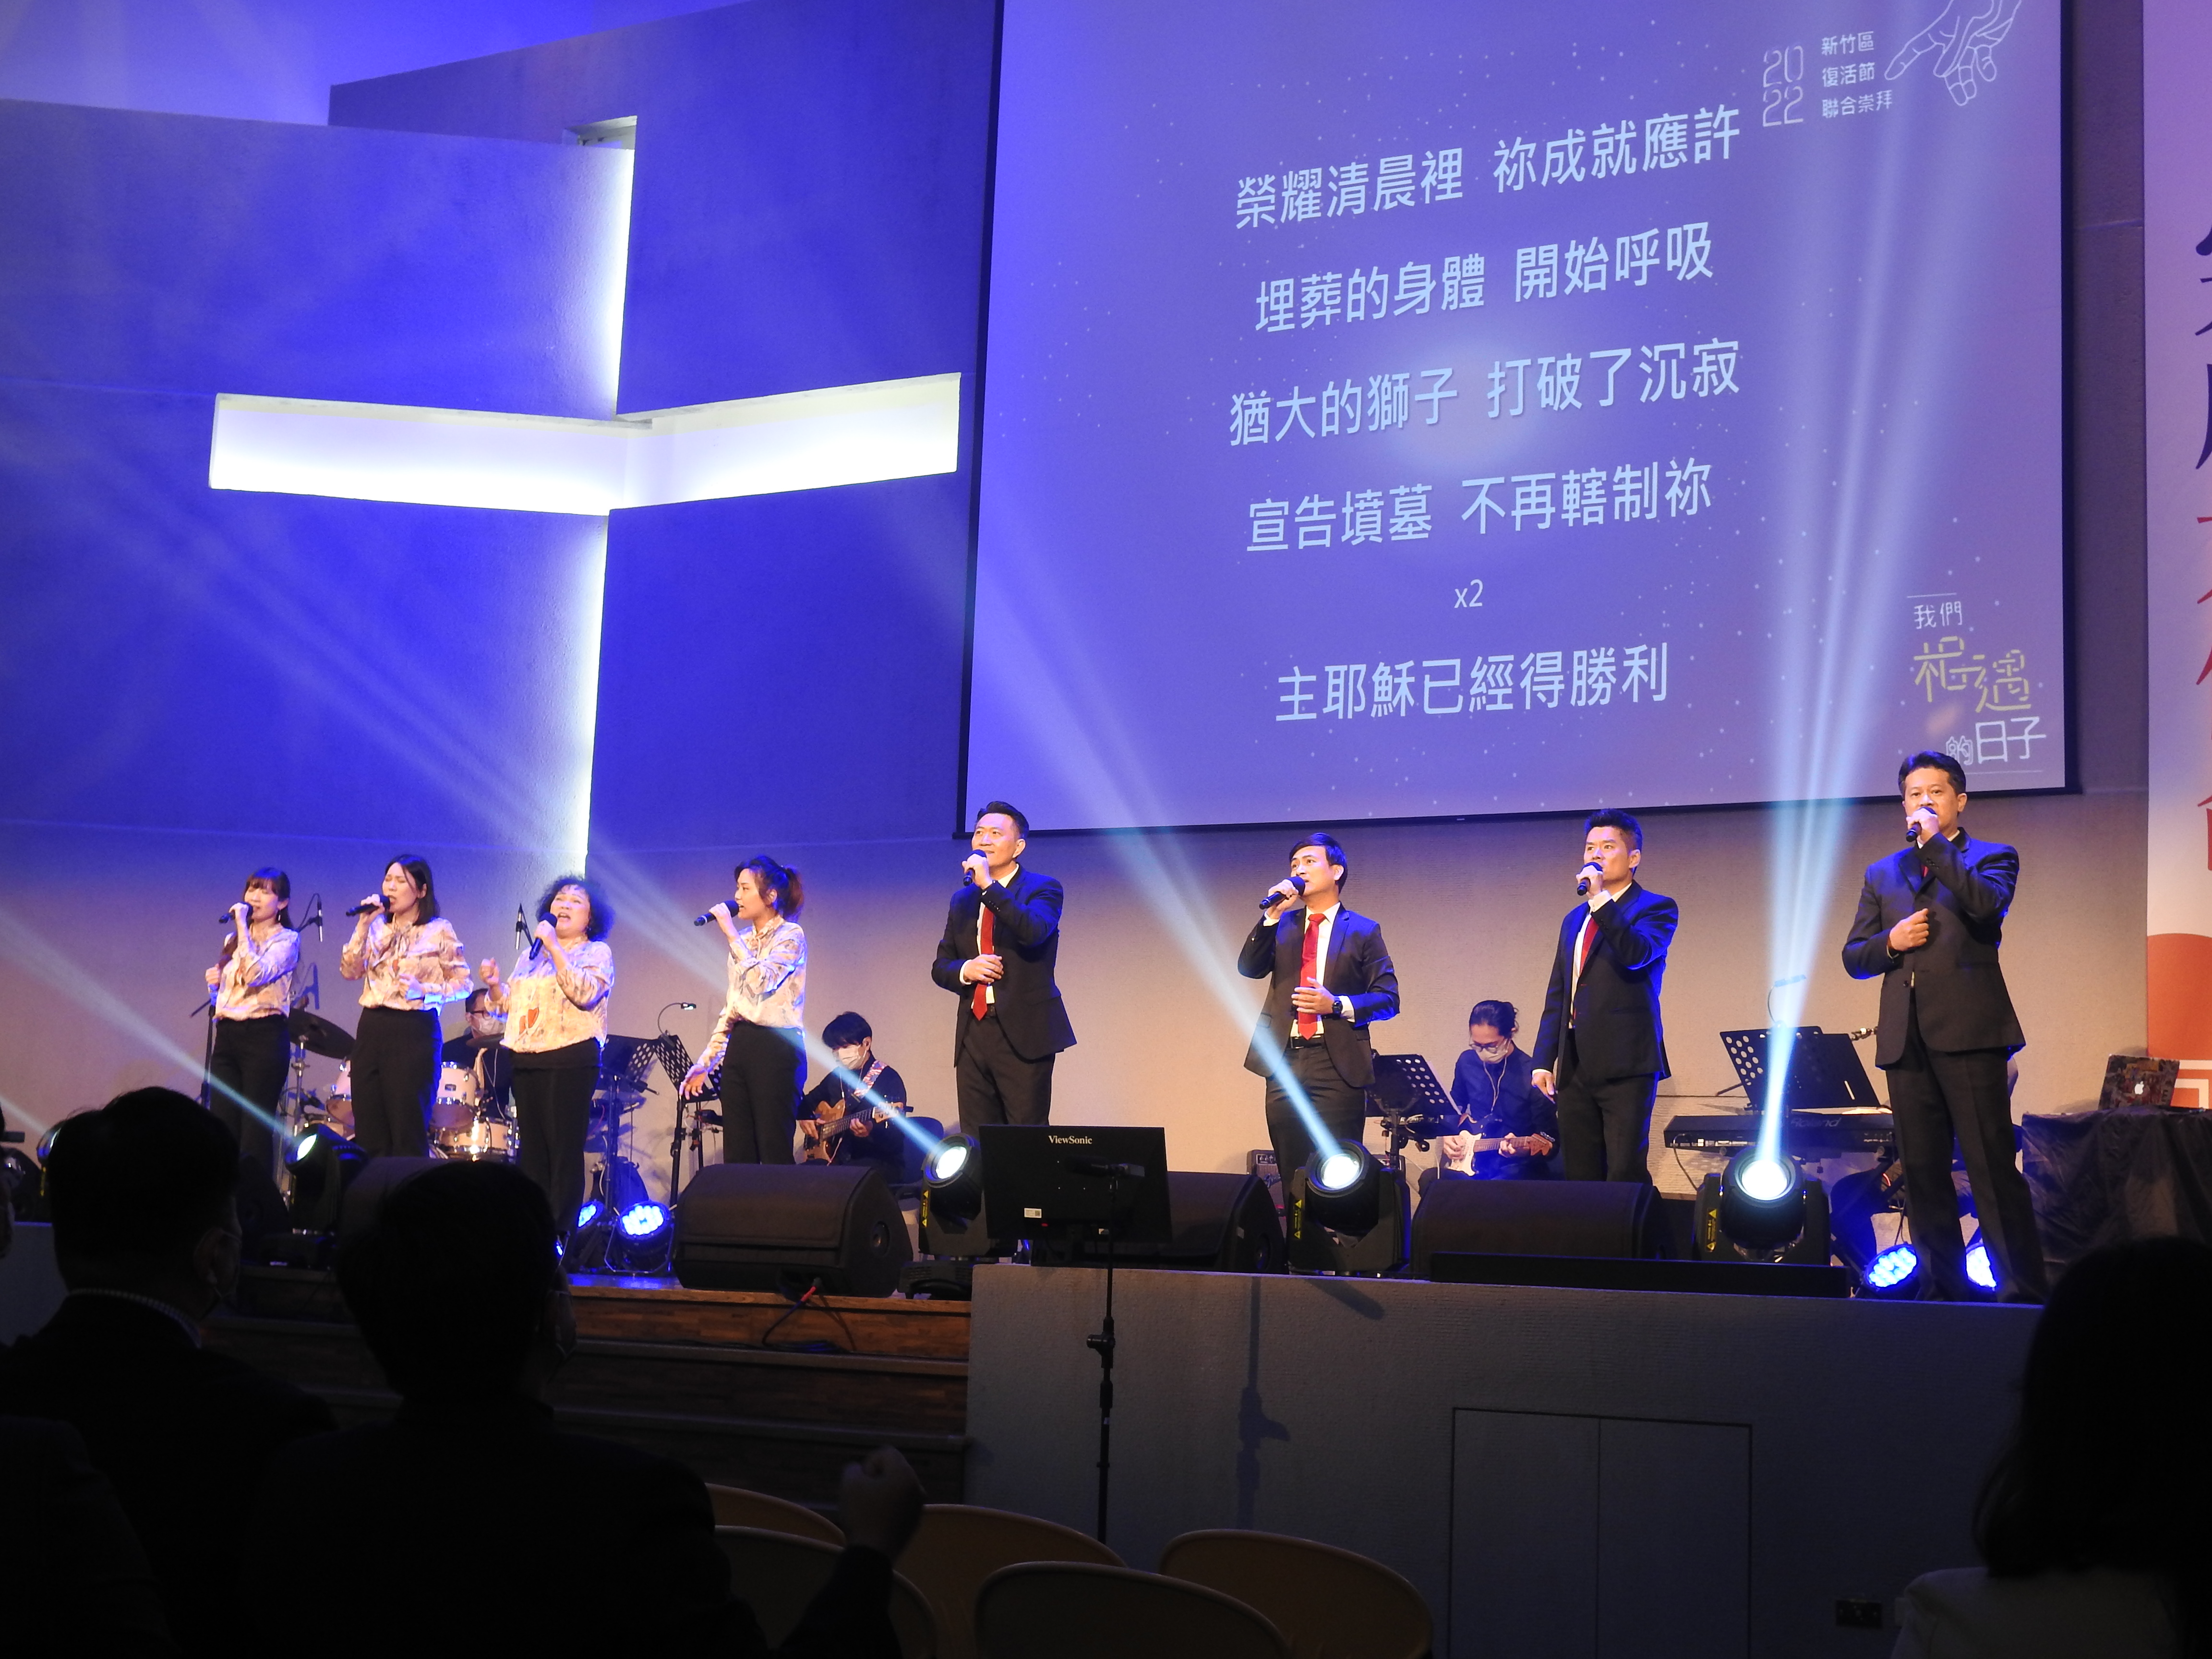 天韻合唱團帶領敬拜與獻唱。(圖/新竹市基督教聯合關懷協會提供)